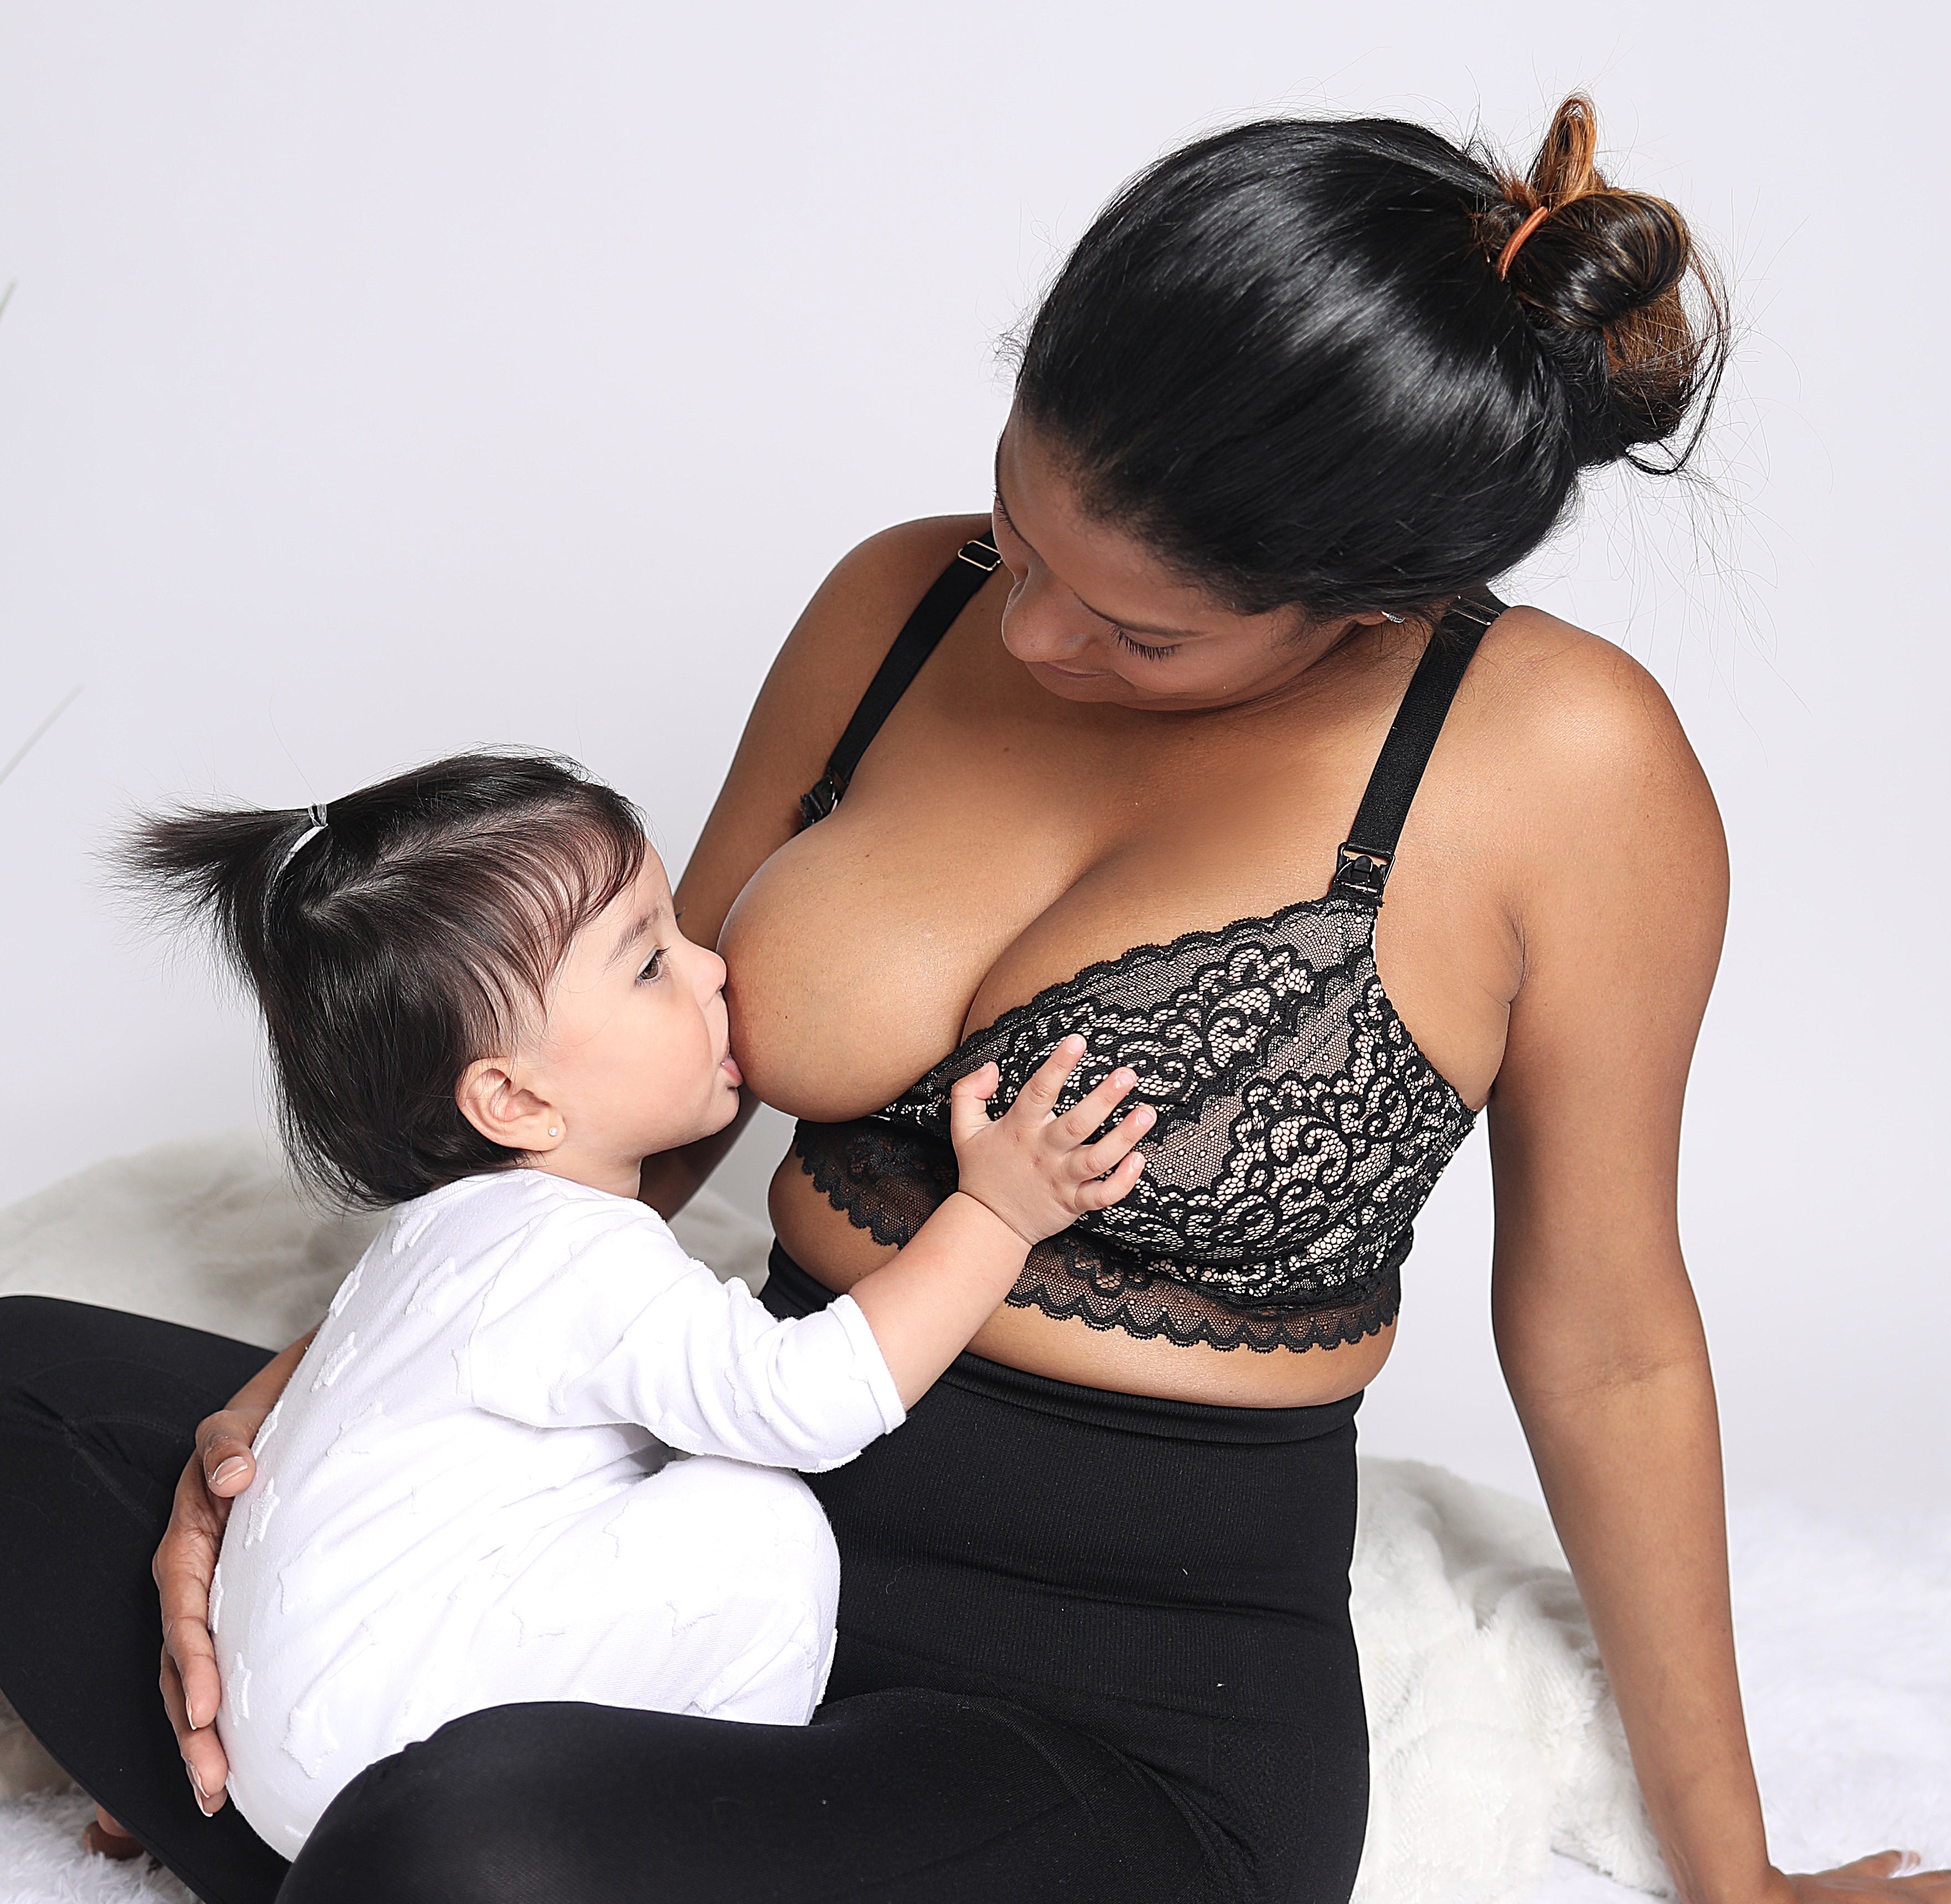 Ayla black - Pumping Bra - Ayla black pumping bra - pumping bra ayla - mom with baby - ayla pumping bra 